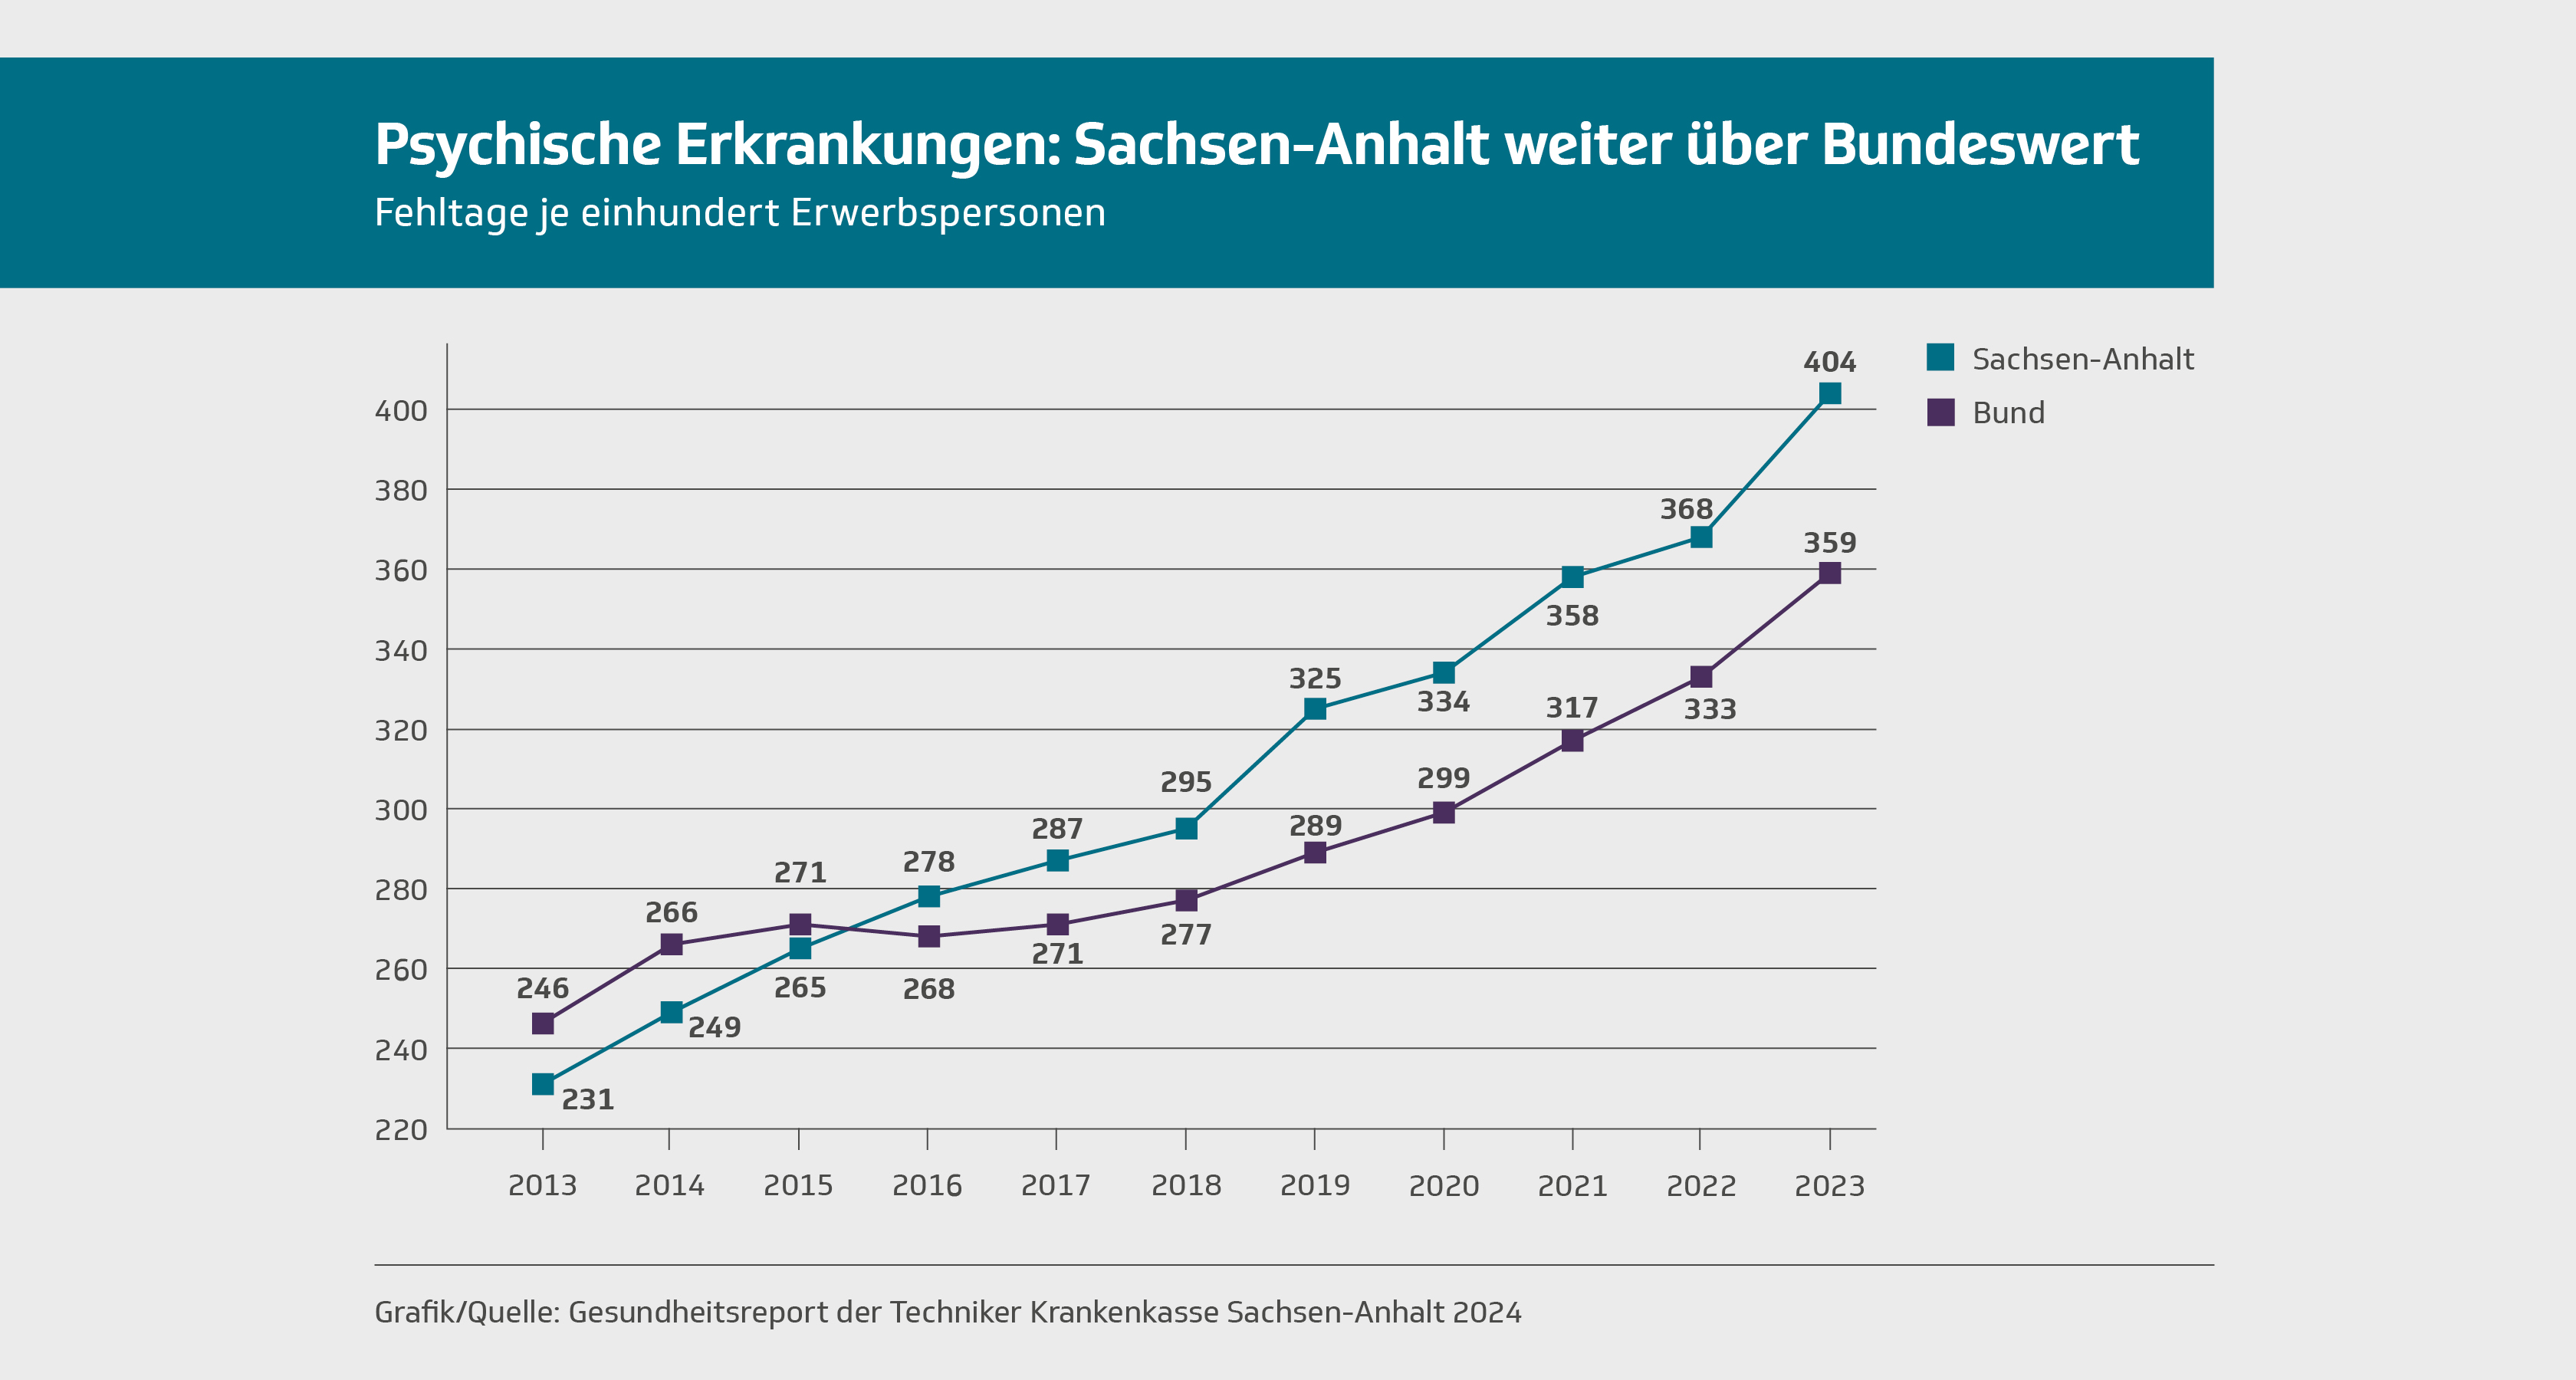 Infografik: Sachsen-Anhalt bei psychischen Erkrankungen über Bundeswert. Quelle: TK.